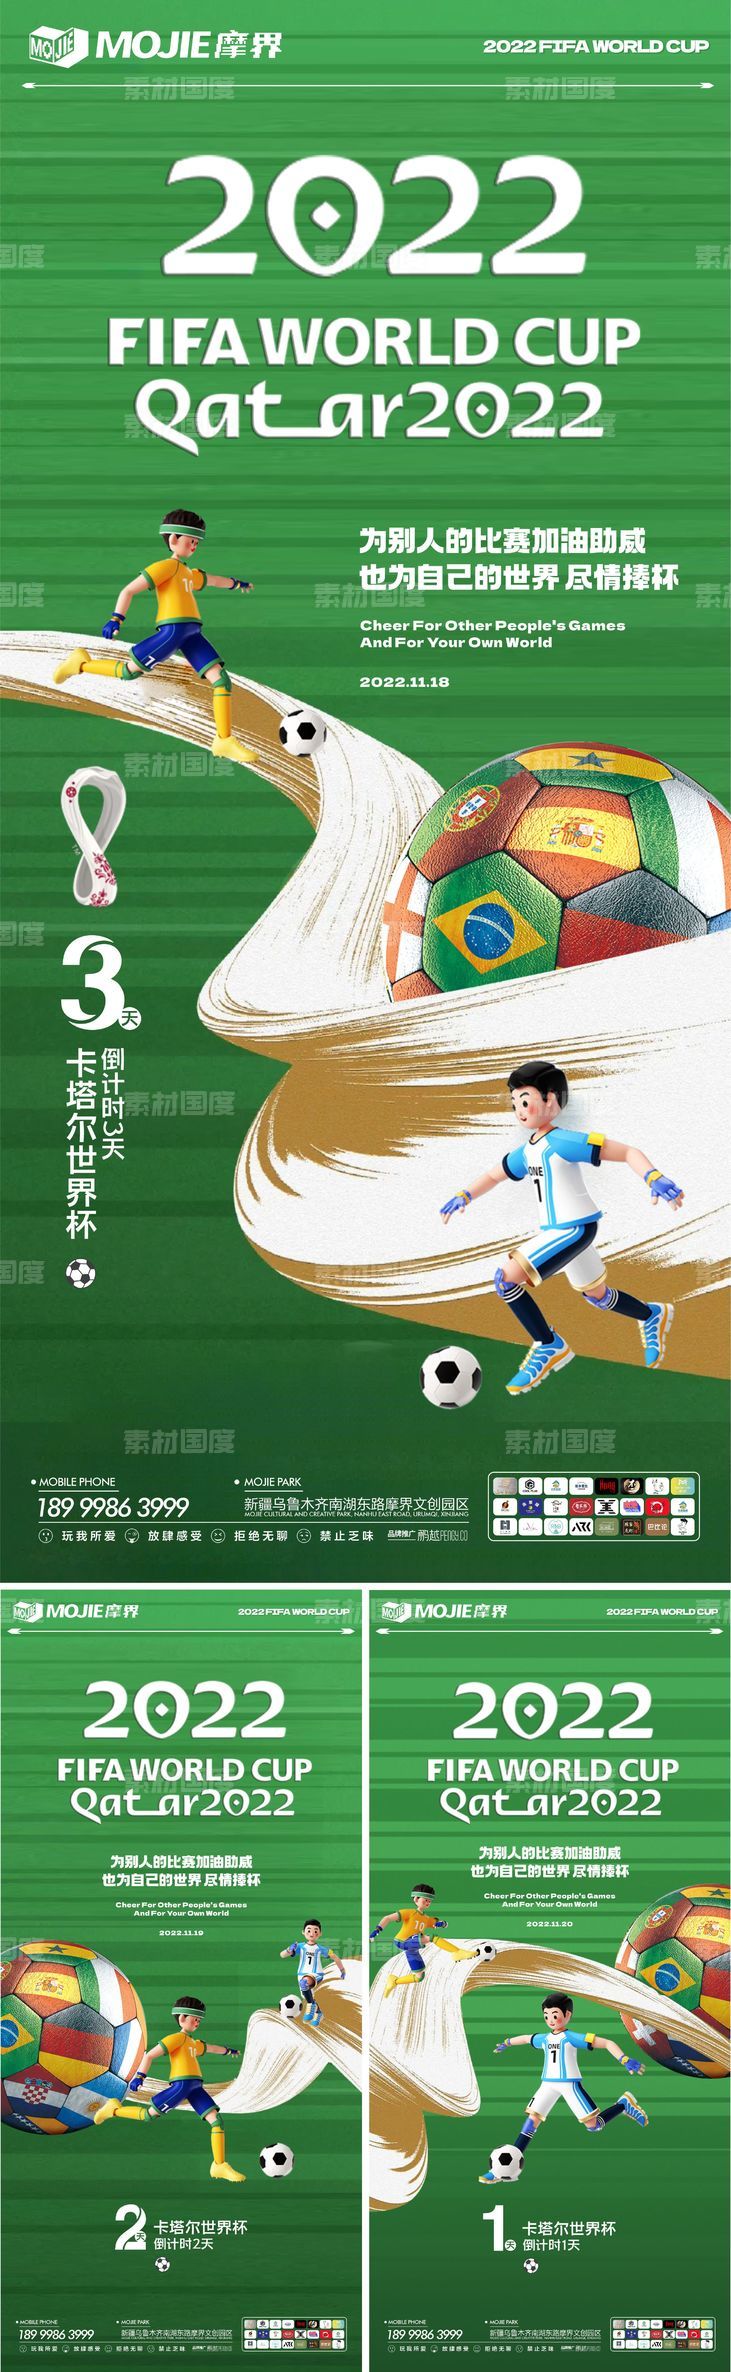 世界杯倒计时创意海报